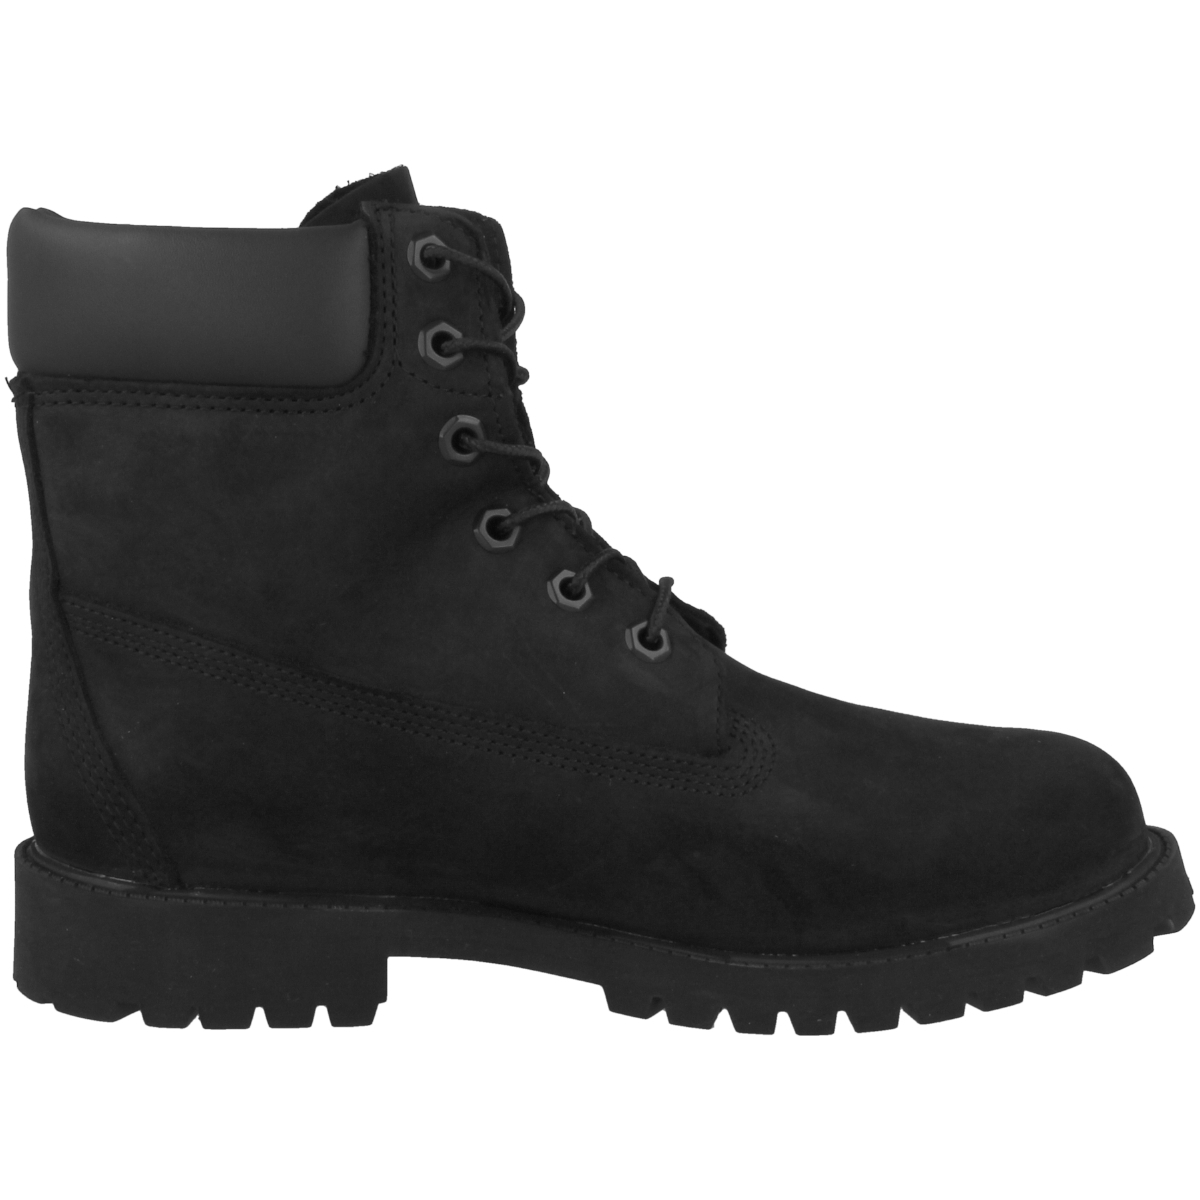 Timberland 6 Inch Premium Boots 12907 schwarz